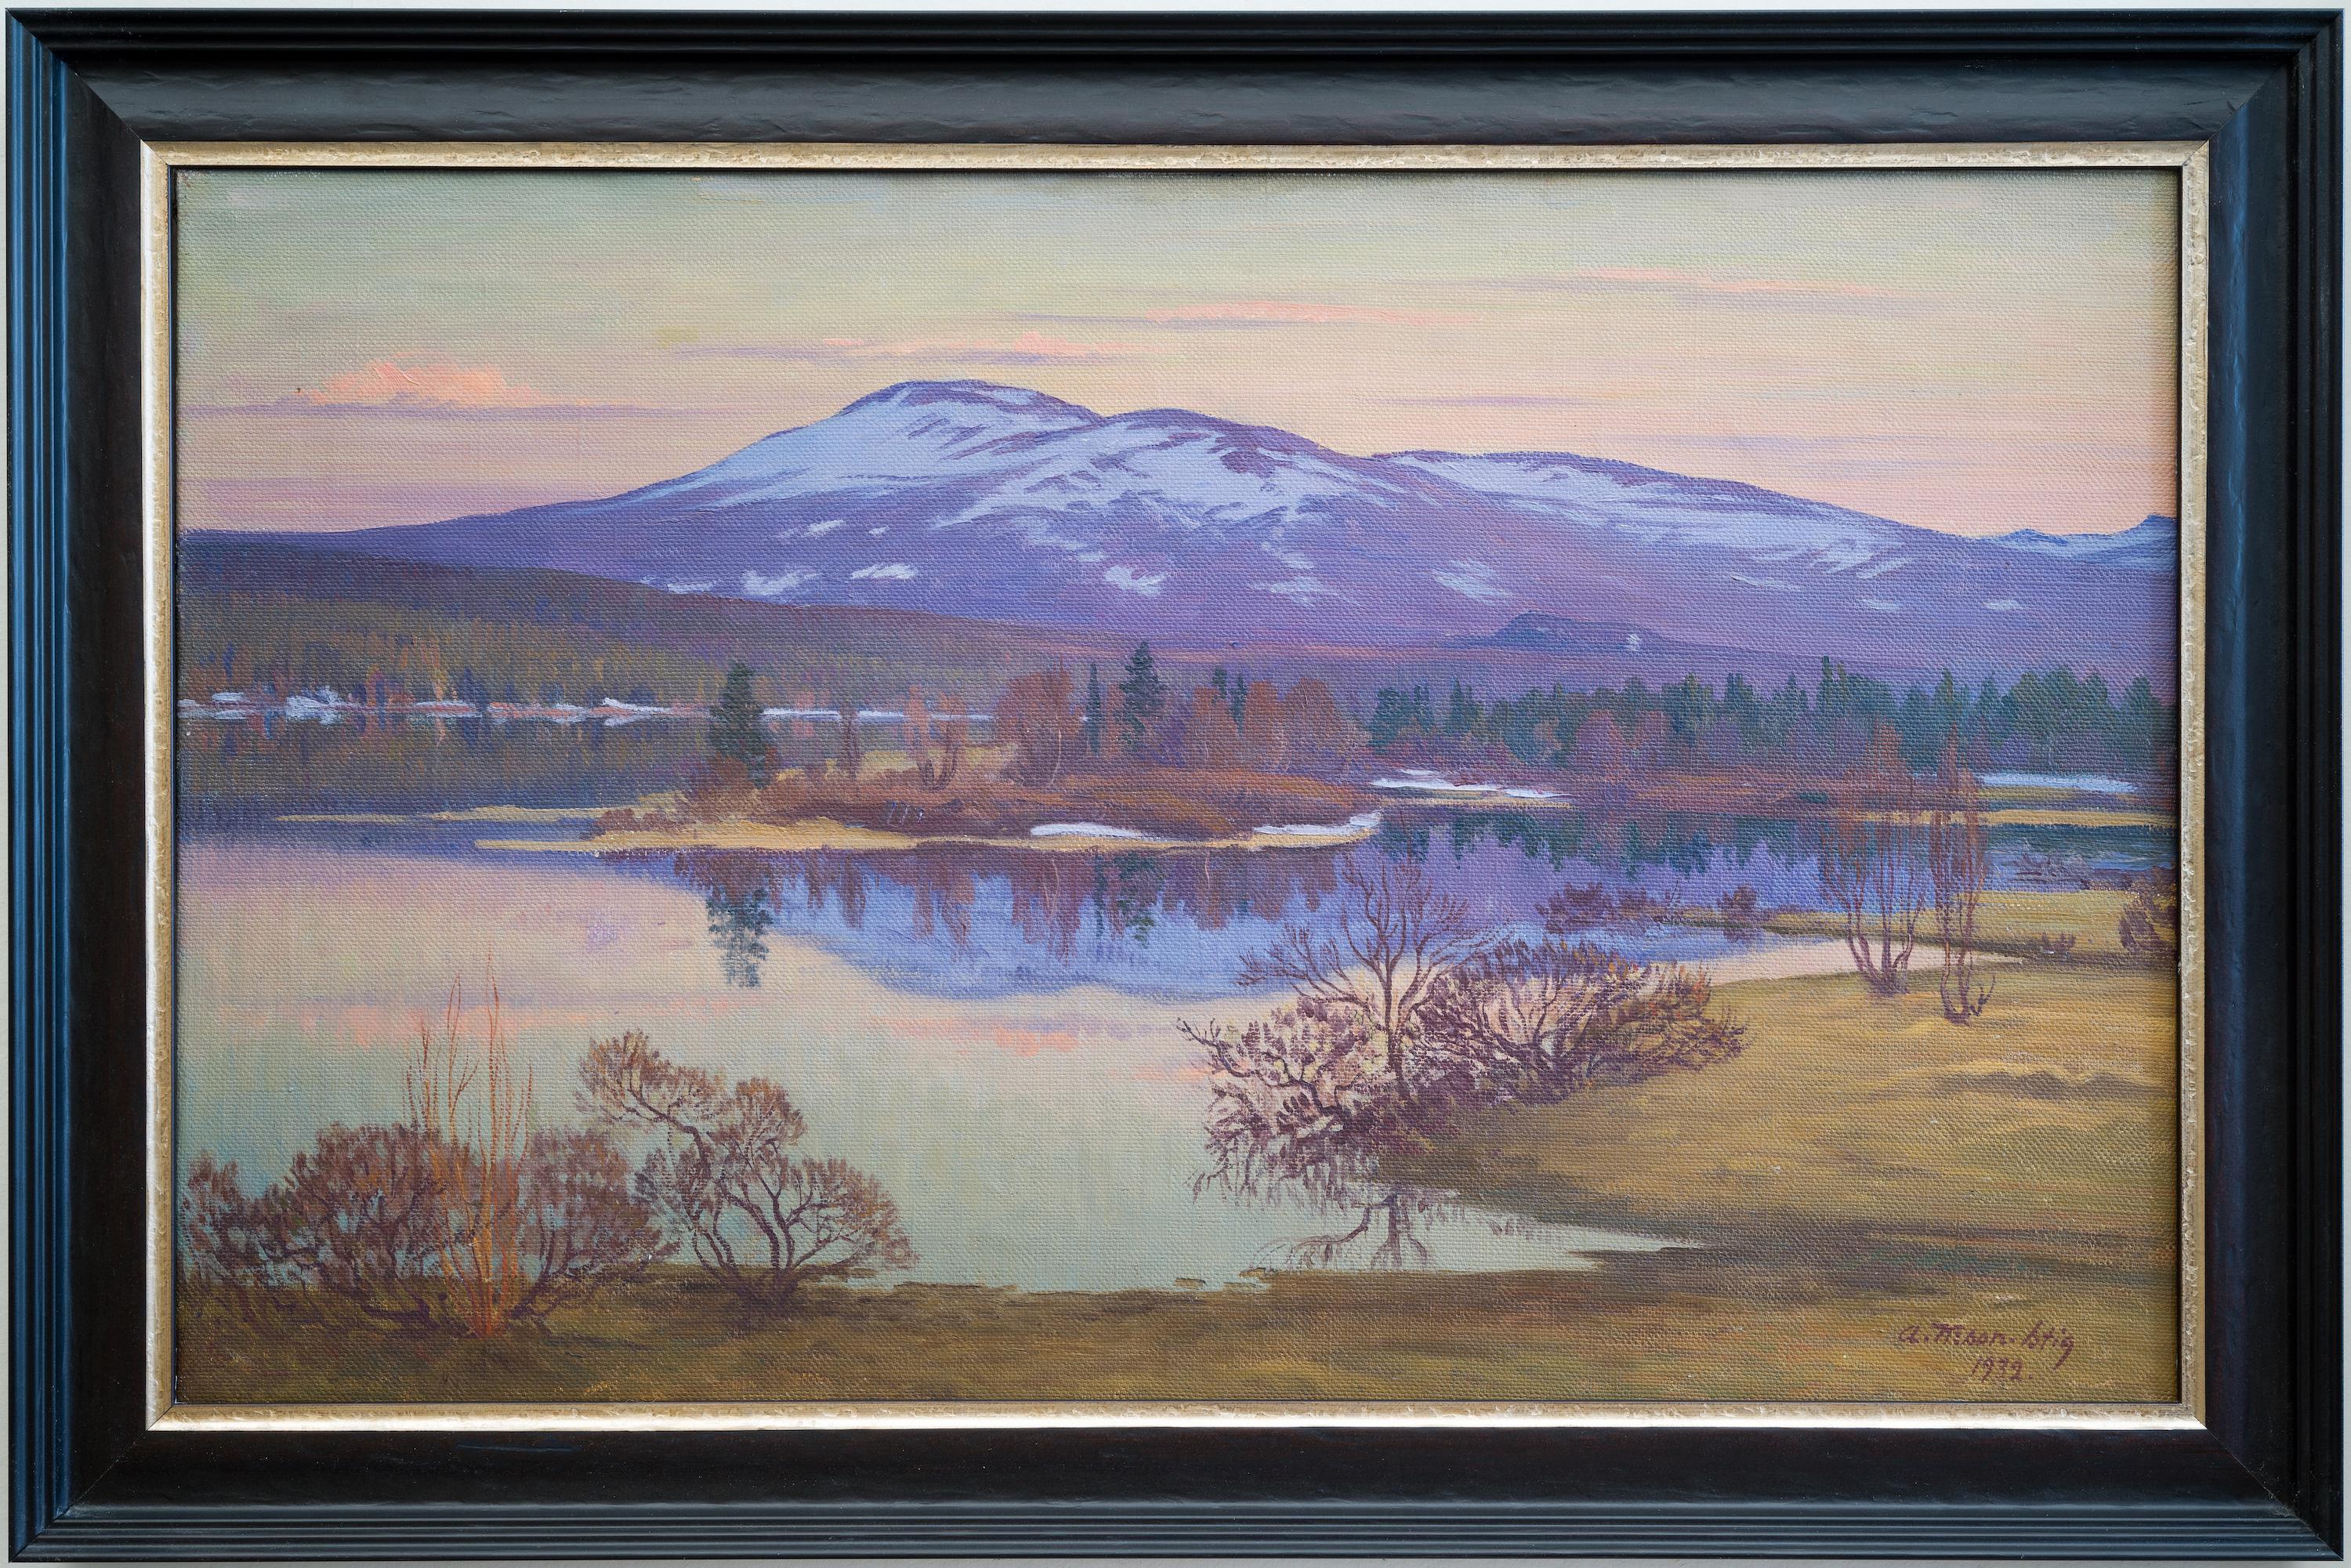 Le tableau que nous vendons est une vue de montagne à couper le souffle de Hålland dans le Jämtland, en Suède, créée par Ante Karlsson-Stig en 1932. Ante Karlsson-Stig (1885-1967) est un peintre suédois qui a étudié avec Henri Matisse à Paris. Il